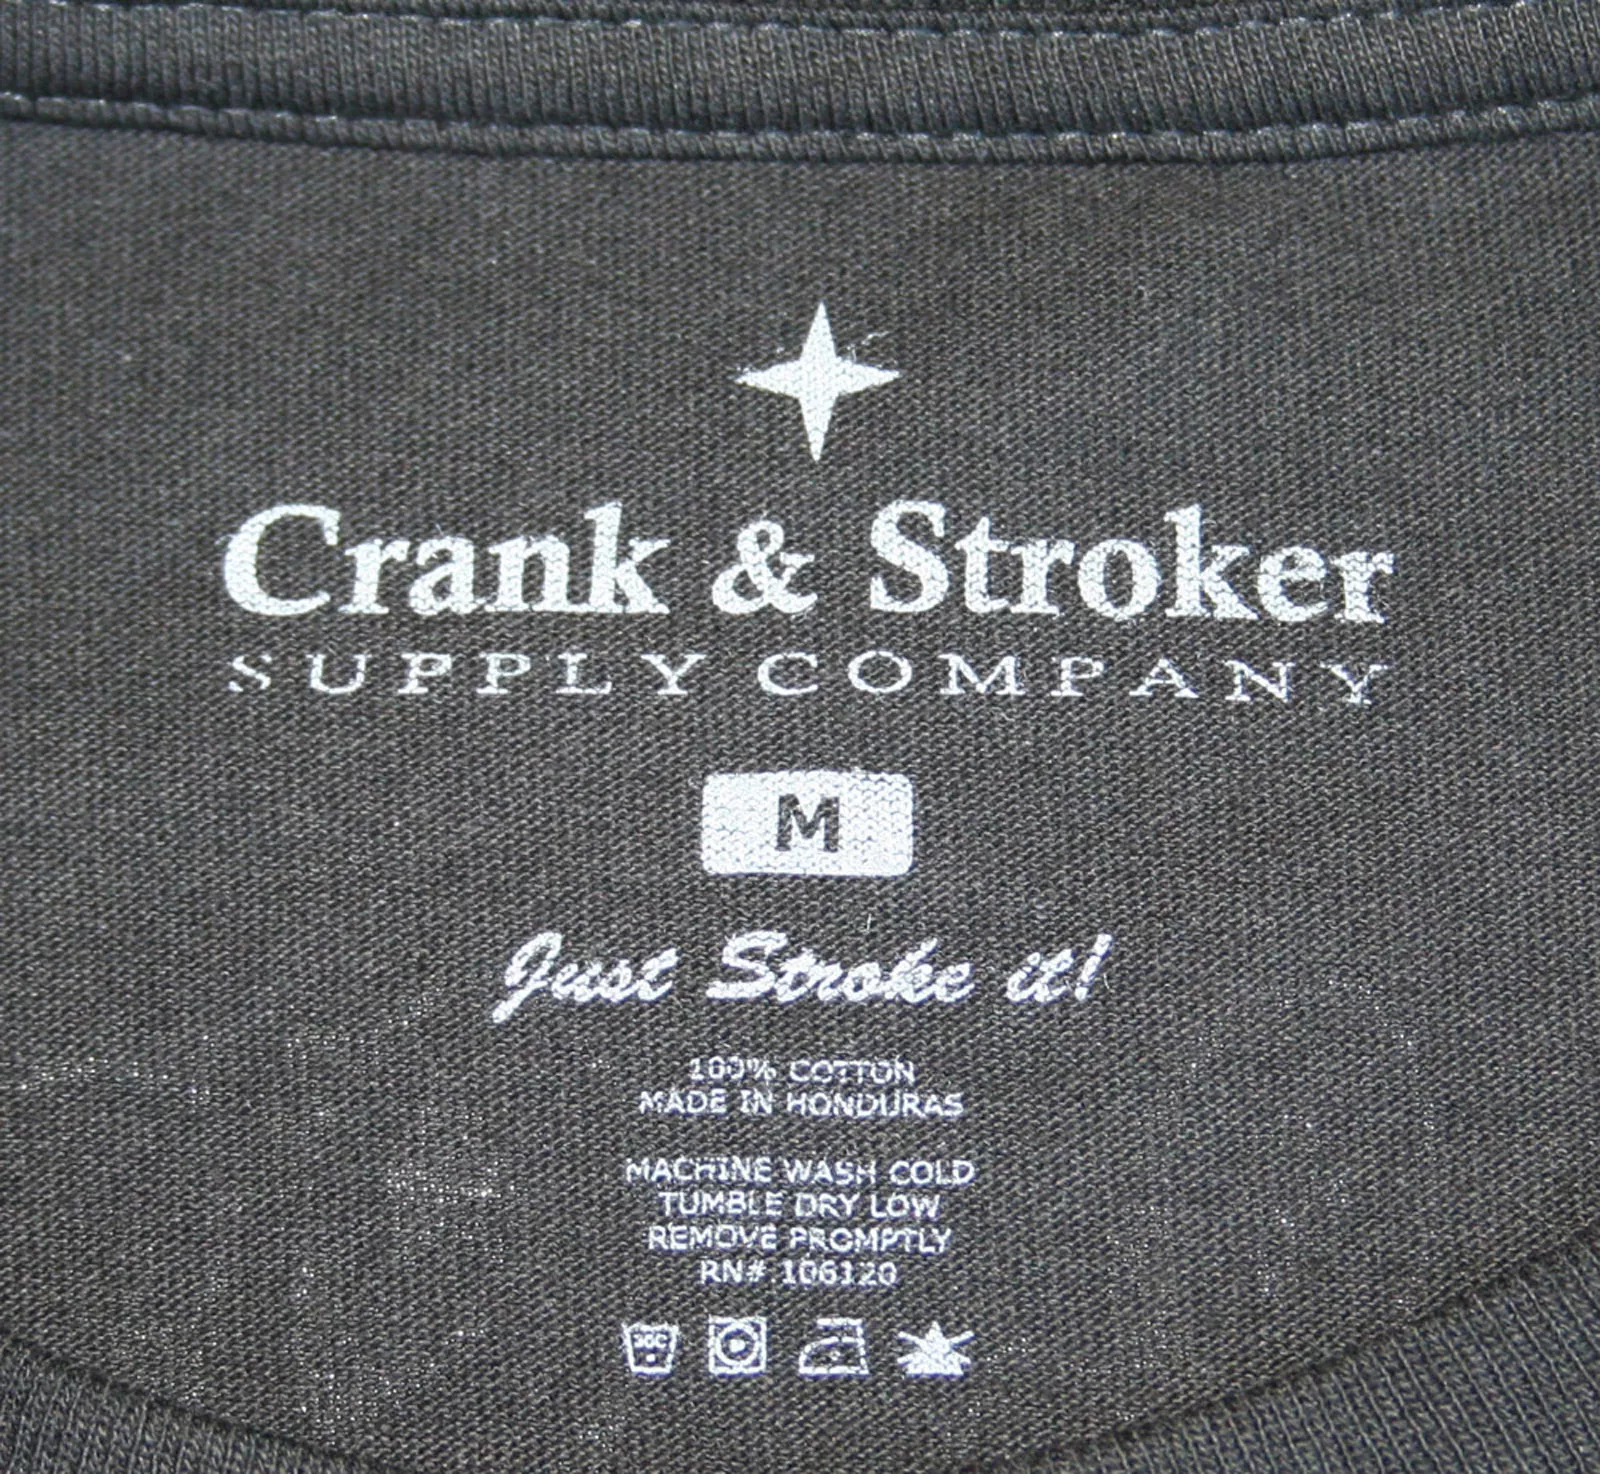 Crank & Stroker 